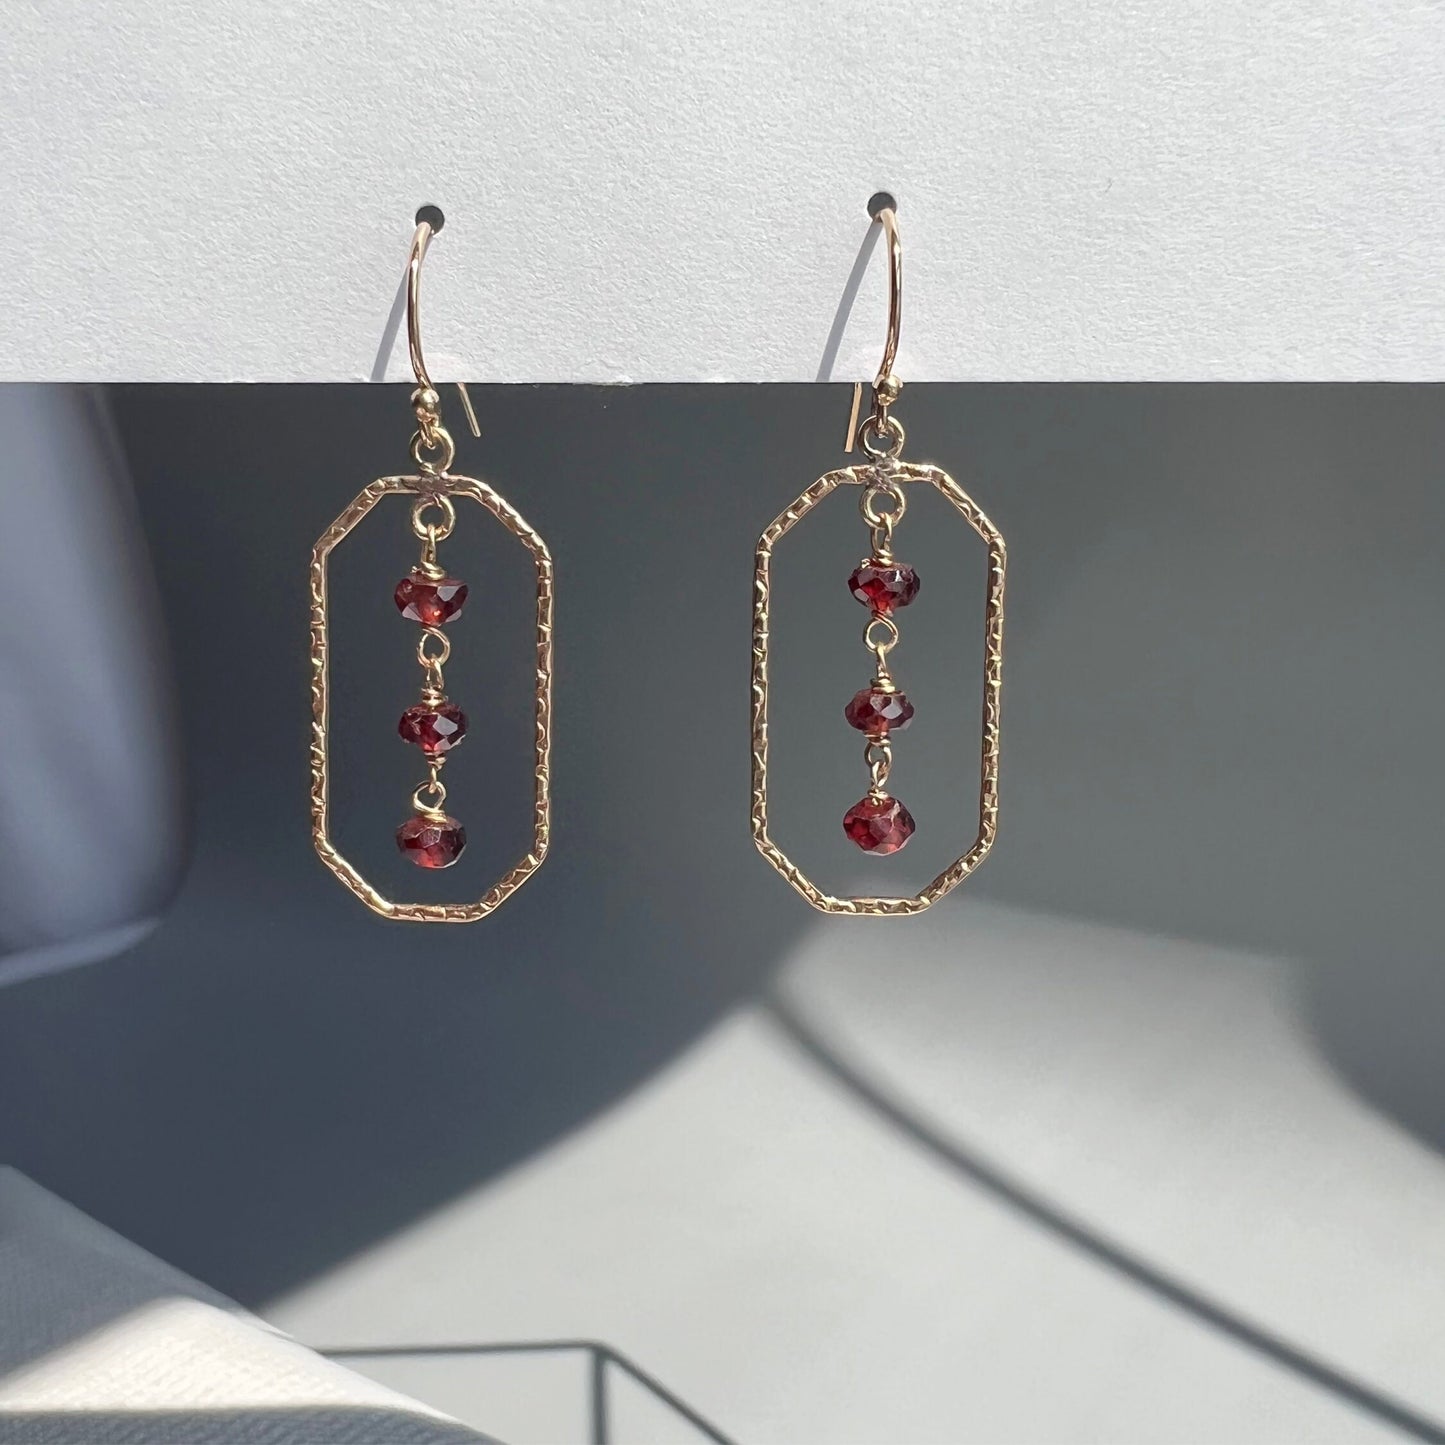 Garnet Earrings,Red Earrings, Geometric Earrings, Dainty Earrings,Minimalist Earrings,Gemstone Earrings, Everyday Earrings, January Earrings